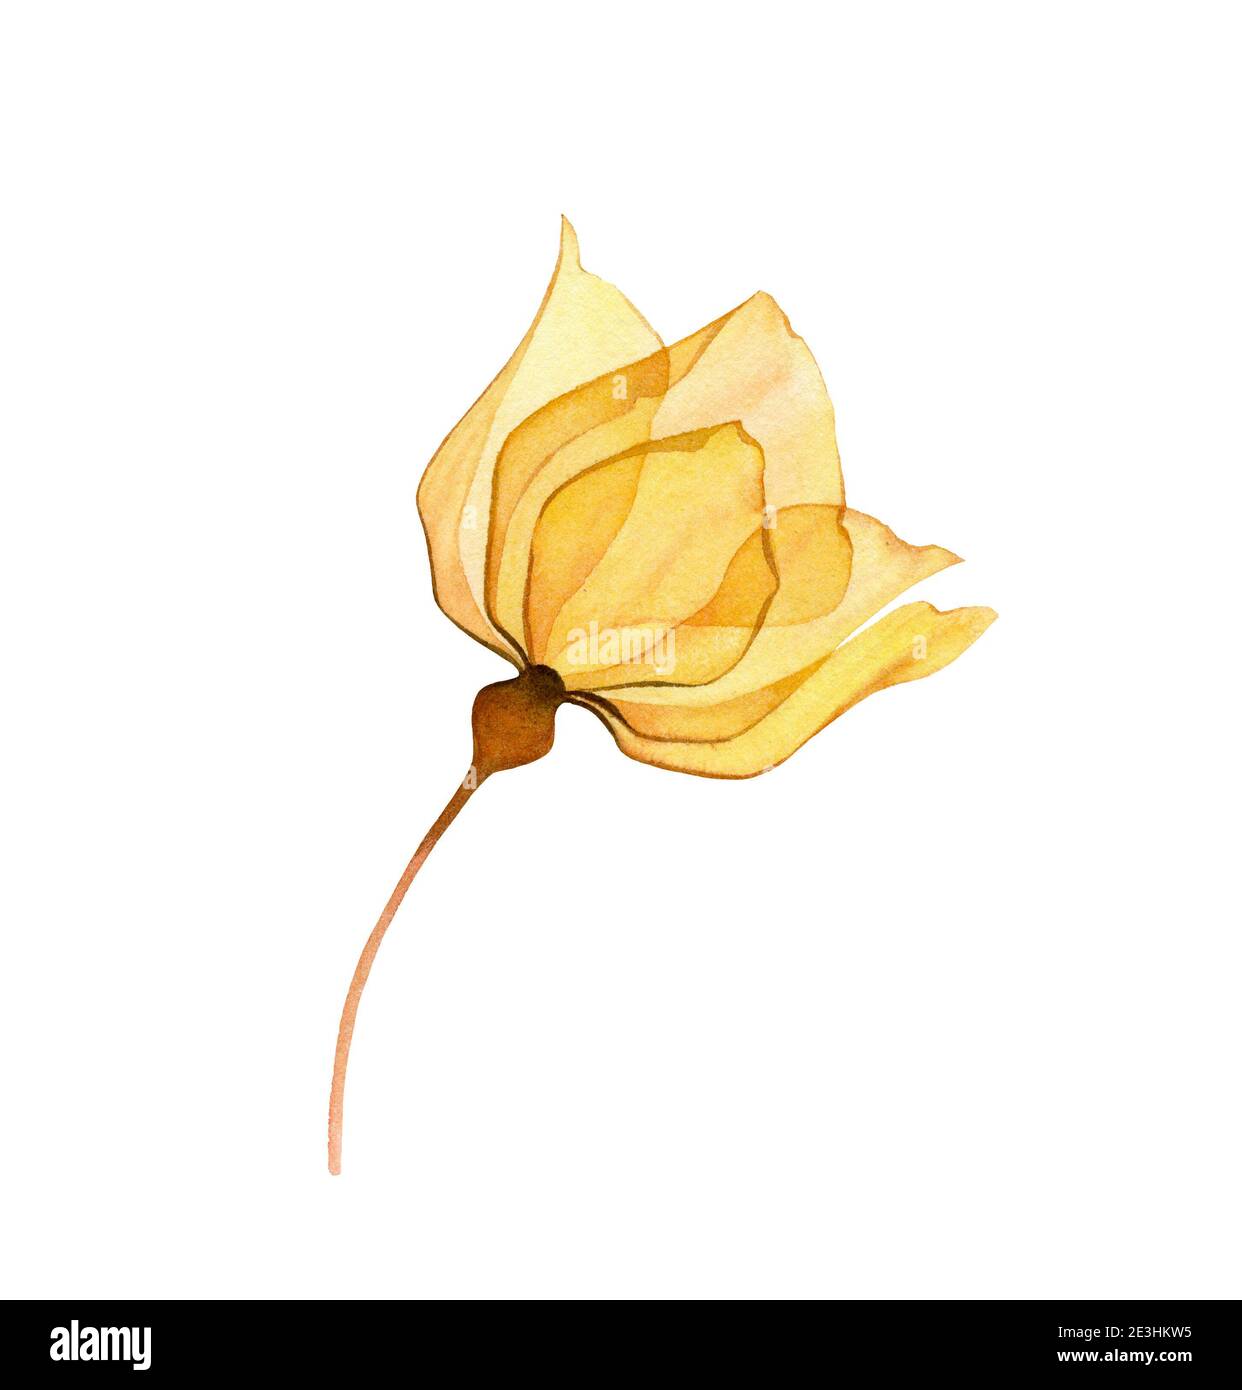 Aquarell gelbe Rose. Transparente Blume isoliert auf weiß. Handbemalte Kunstwerke mit lebendigen, detailreichen Blütenblättern. Botanische Illustration für Karten Stockfoto